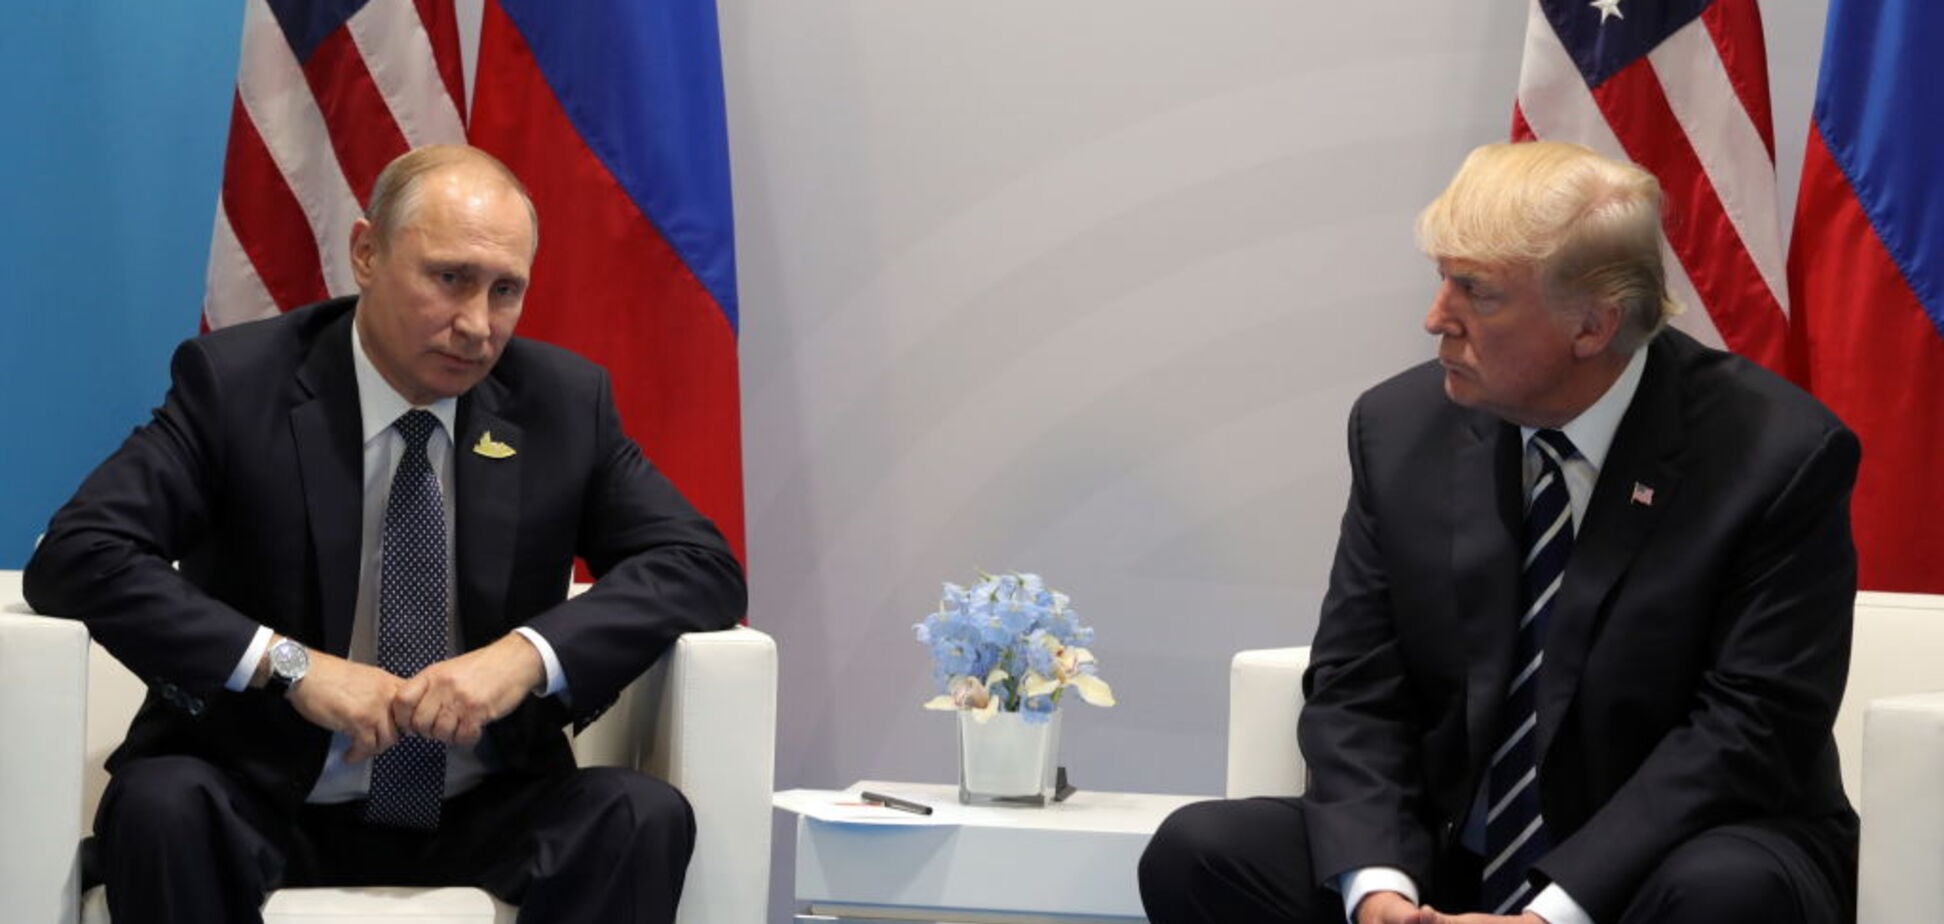 Стравливают Путина с элитой: Кремль выдвинул громкое обвинение против США